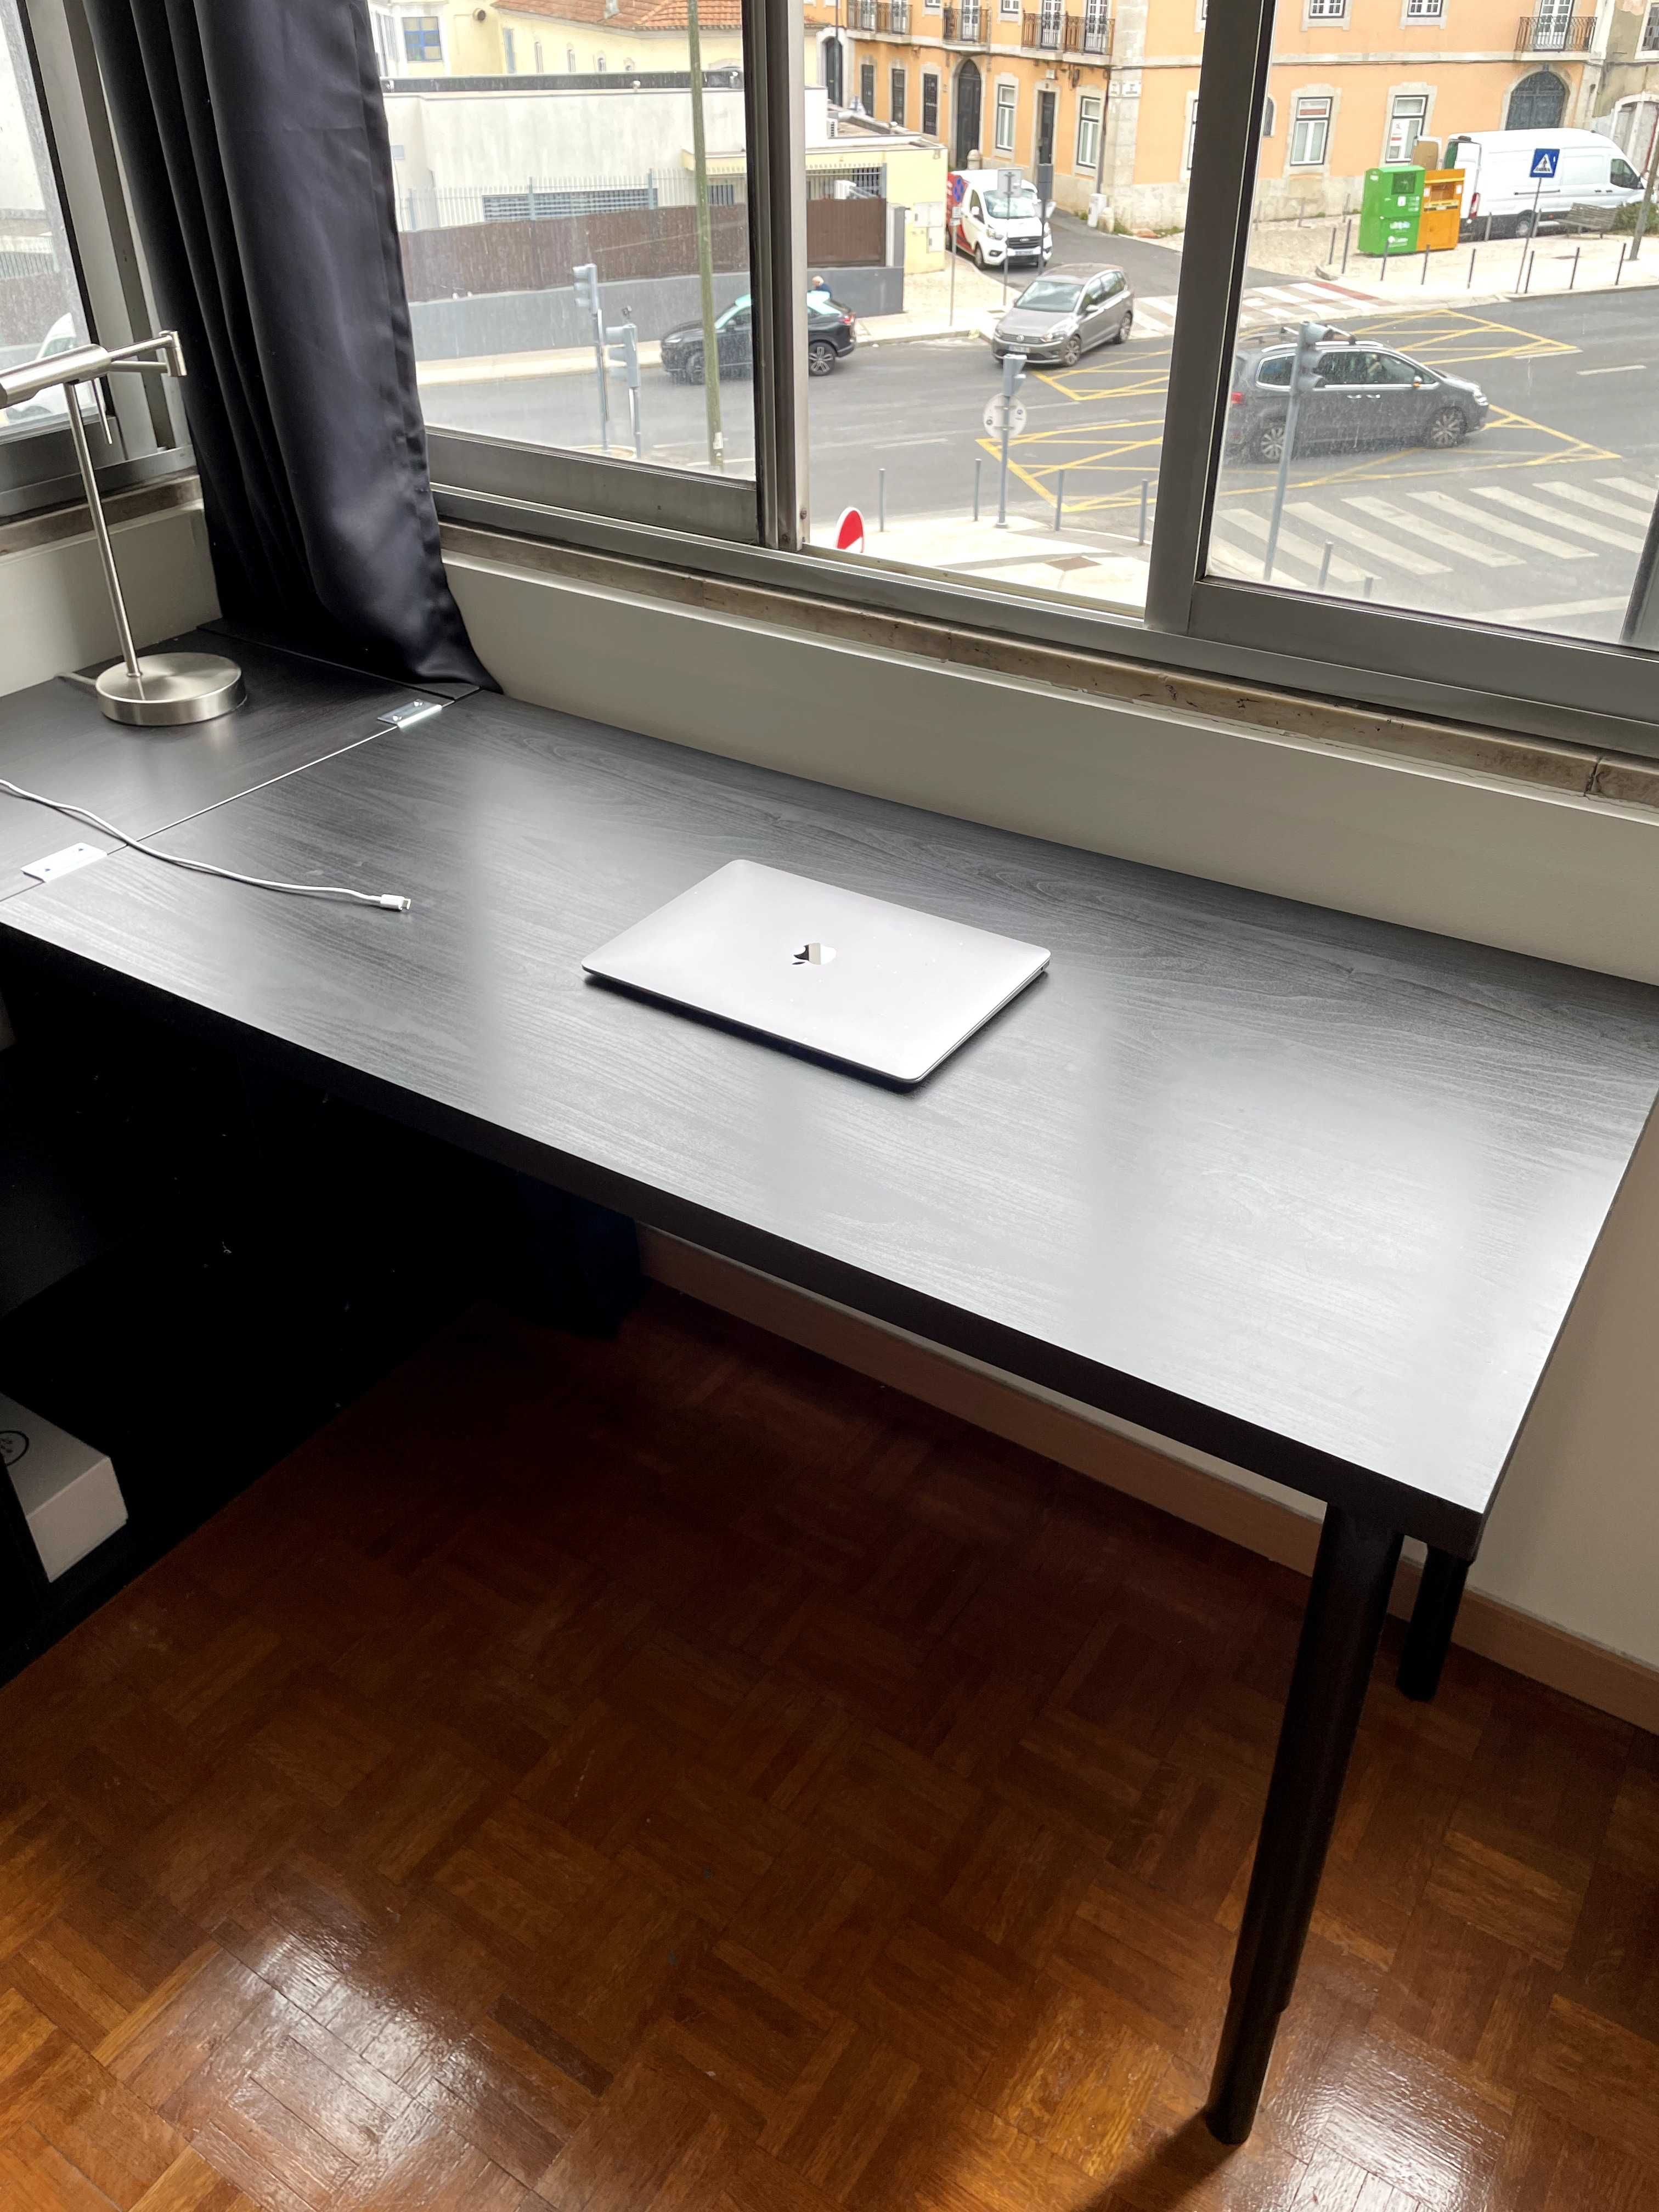 Secretária / mesa com prateleira // Desk with shelf